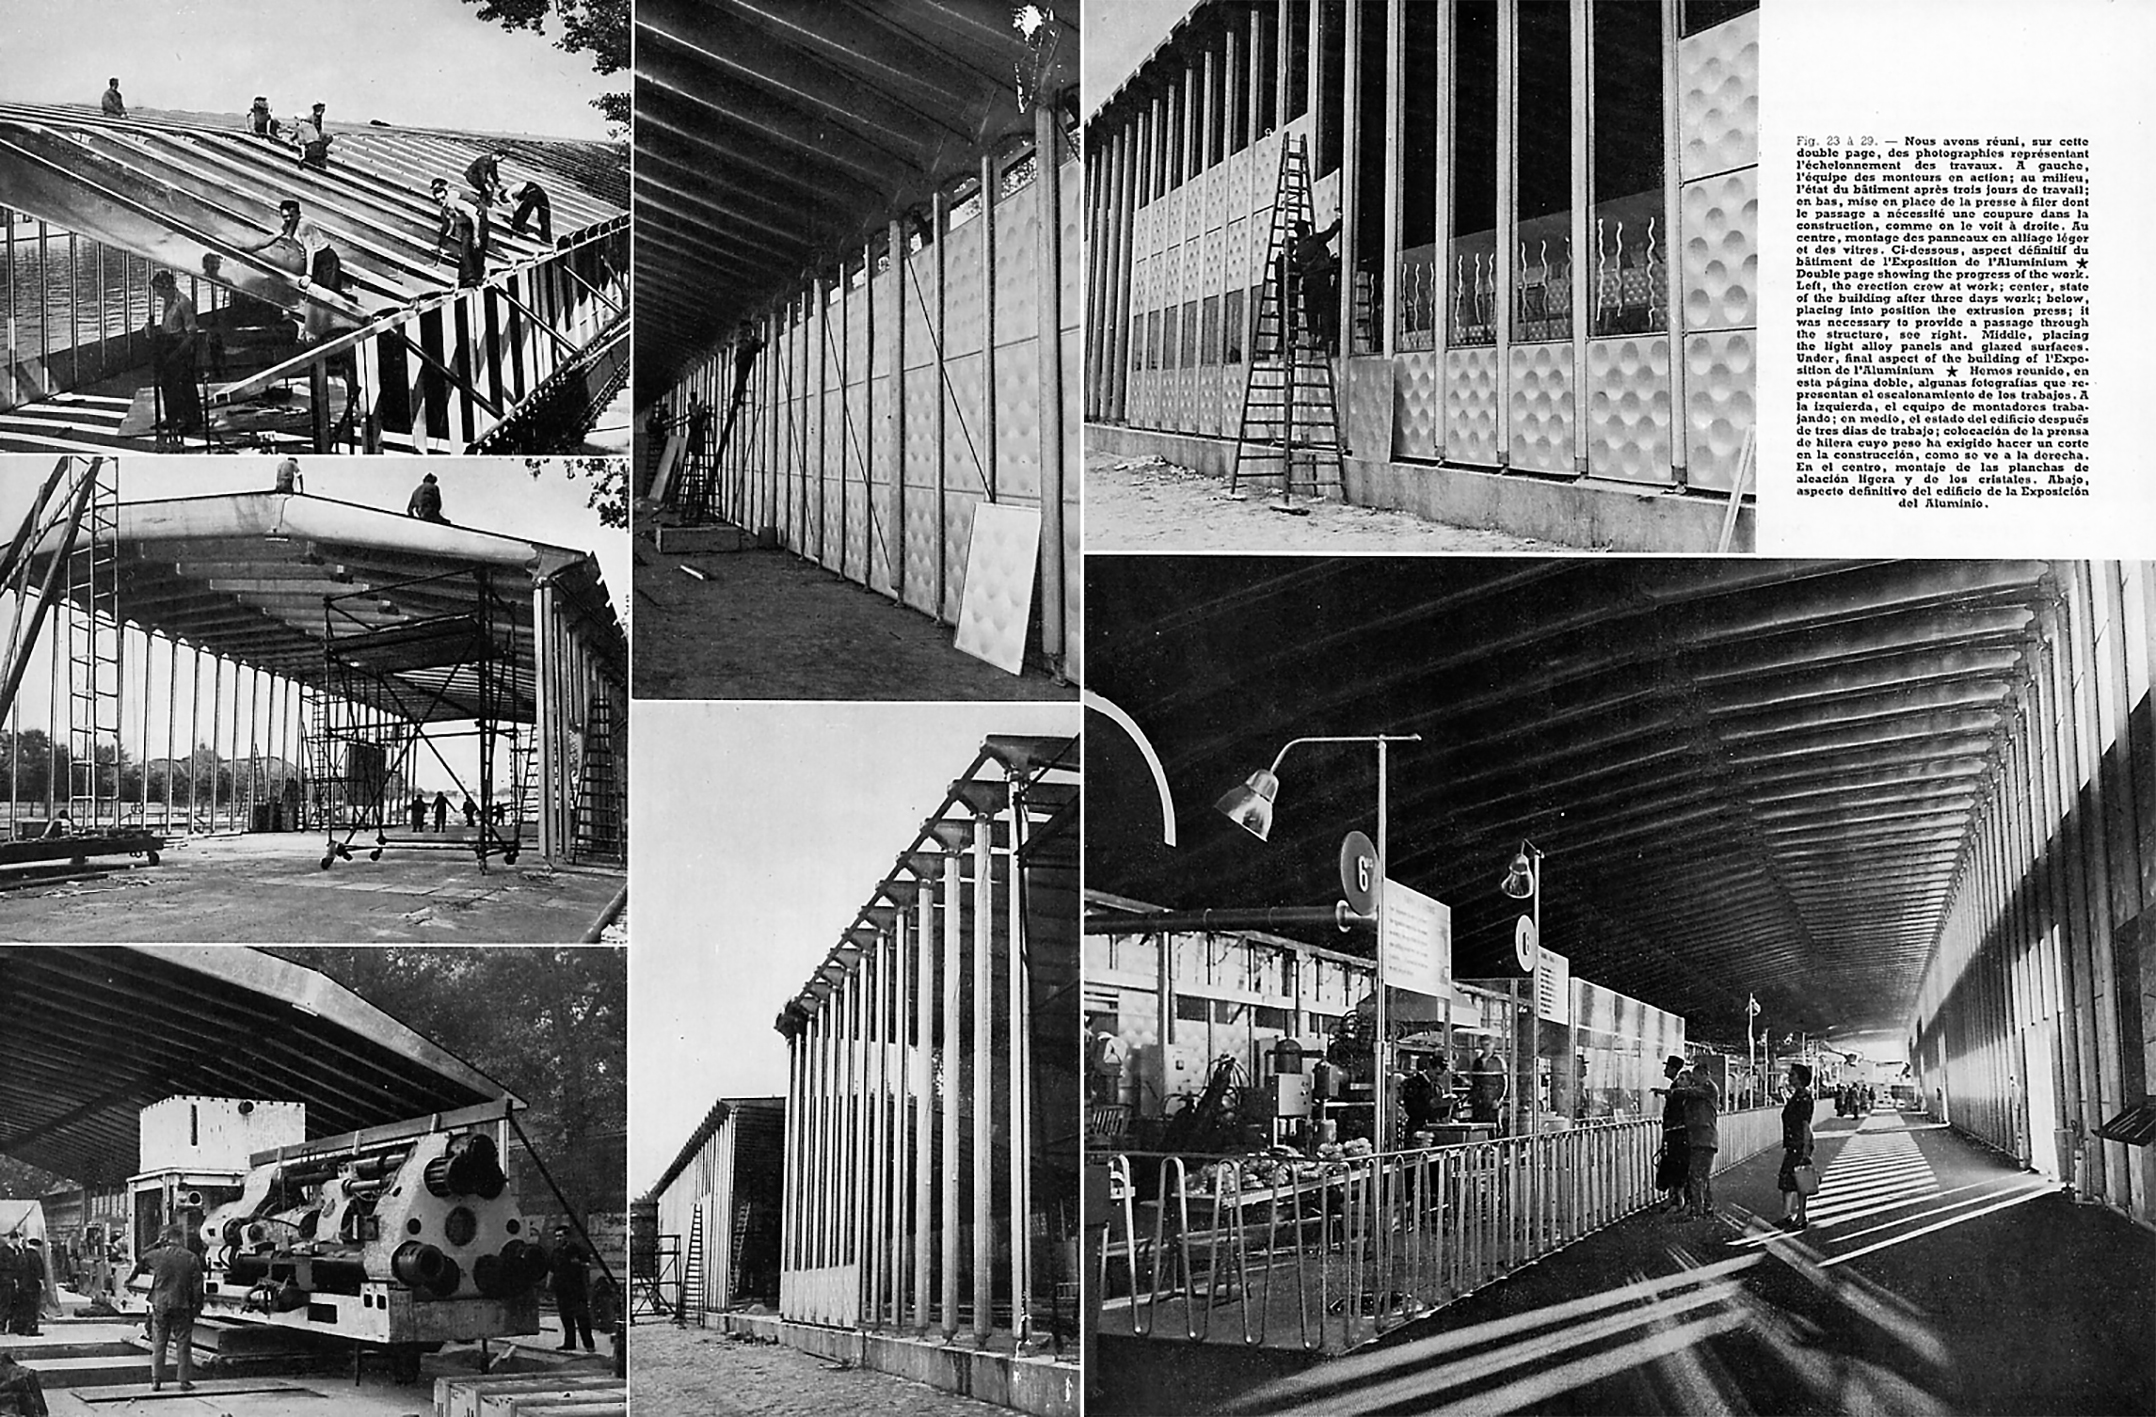 « Le bâtiment de l’exposition du Centenaire de l’aluminium ».<i> Revue de l’aluminium,</i> n° 216, 1954.